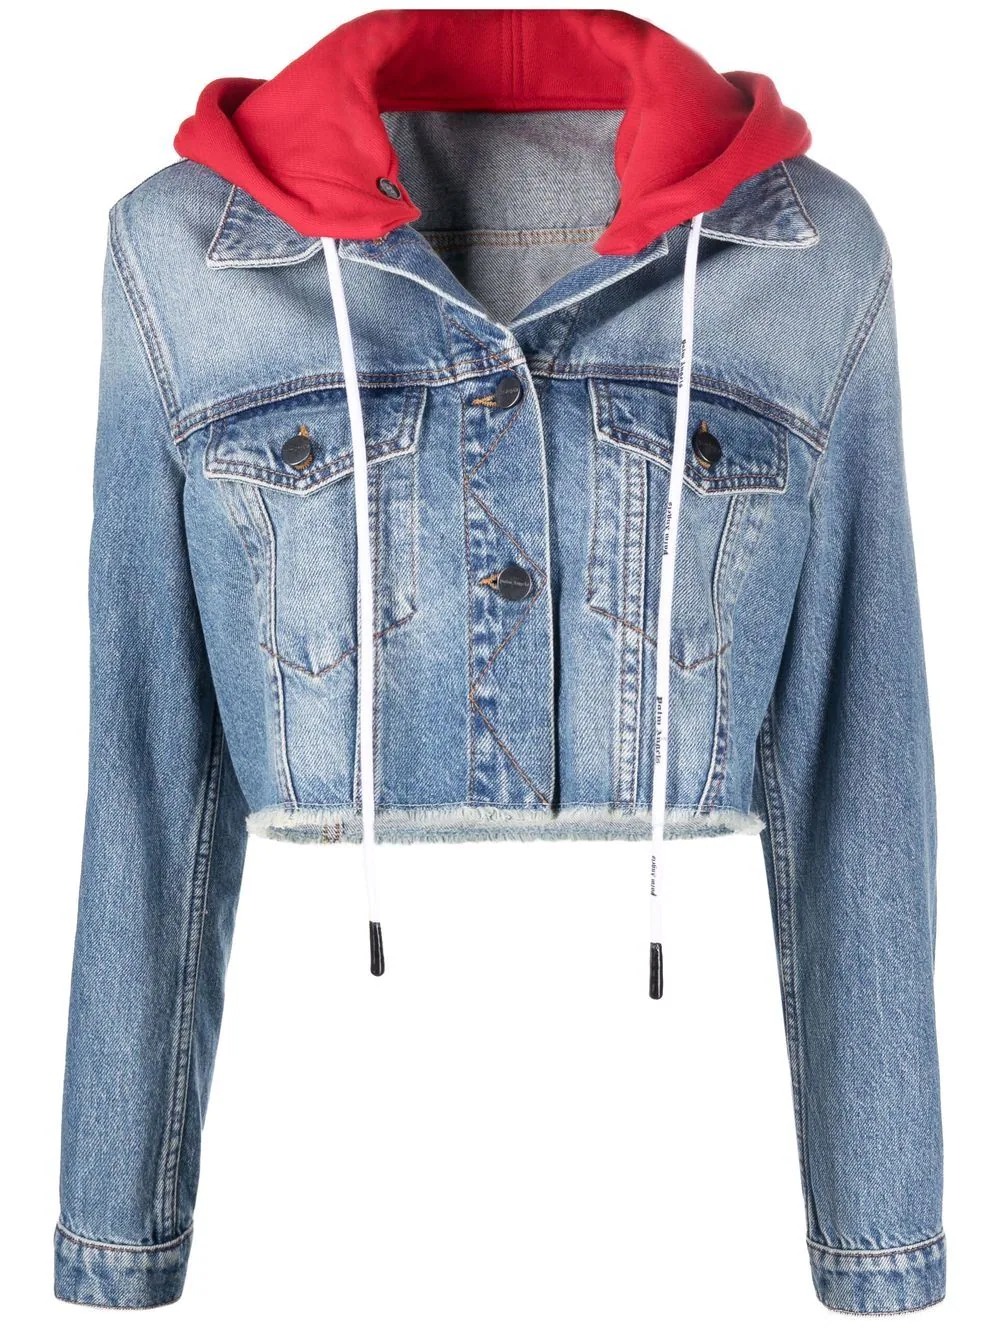 Джинсовая куртка Palm Angels Hooded Denim, синий, красный пикантная укороченная джинсовая куртка с открытой спиной и цепочками женская модная короткая джинсовая куртка с дырками и кисточками